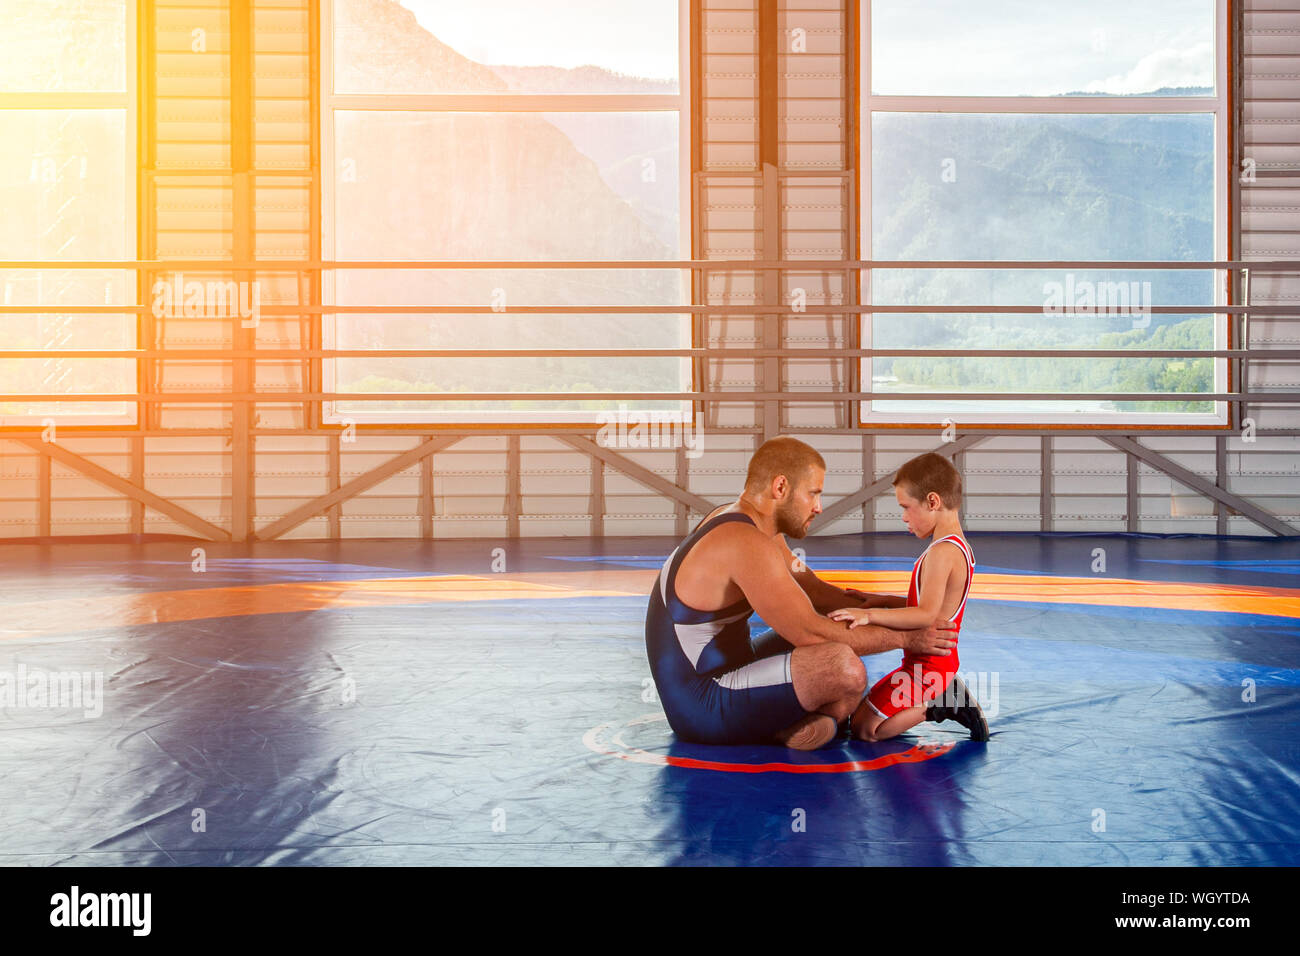 Un homme adulte wrestler coach enseigne les bases de la lutte et met en place un petit garçon à la concurrence. Le concept de l'alimentation de l'enfant et la formation d'arts martiaux Banque D'Images